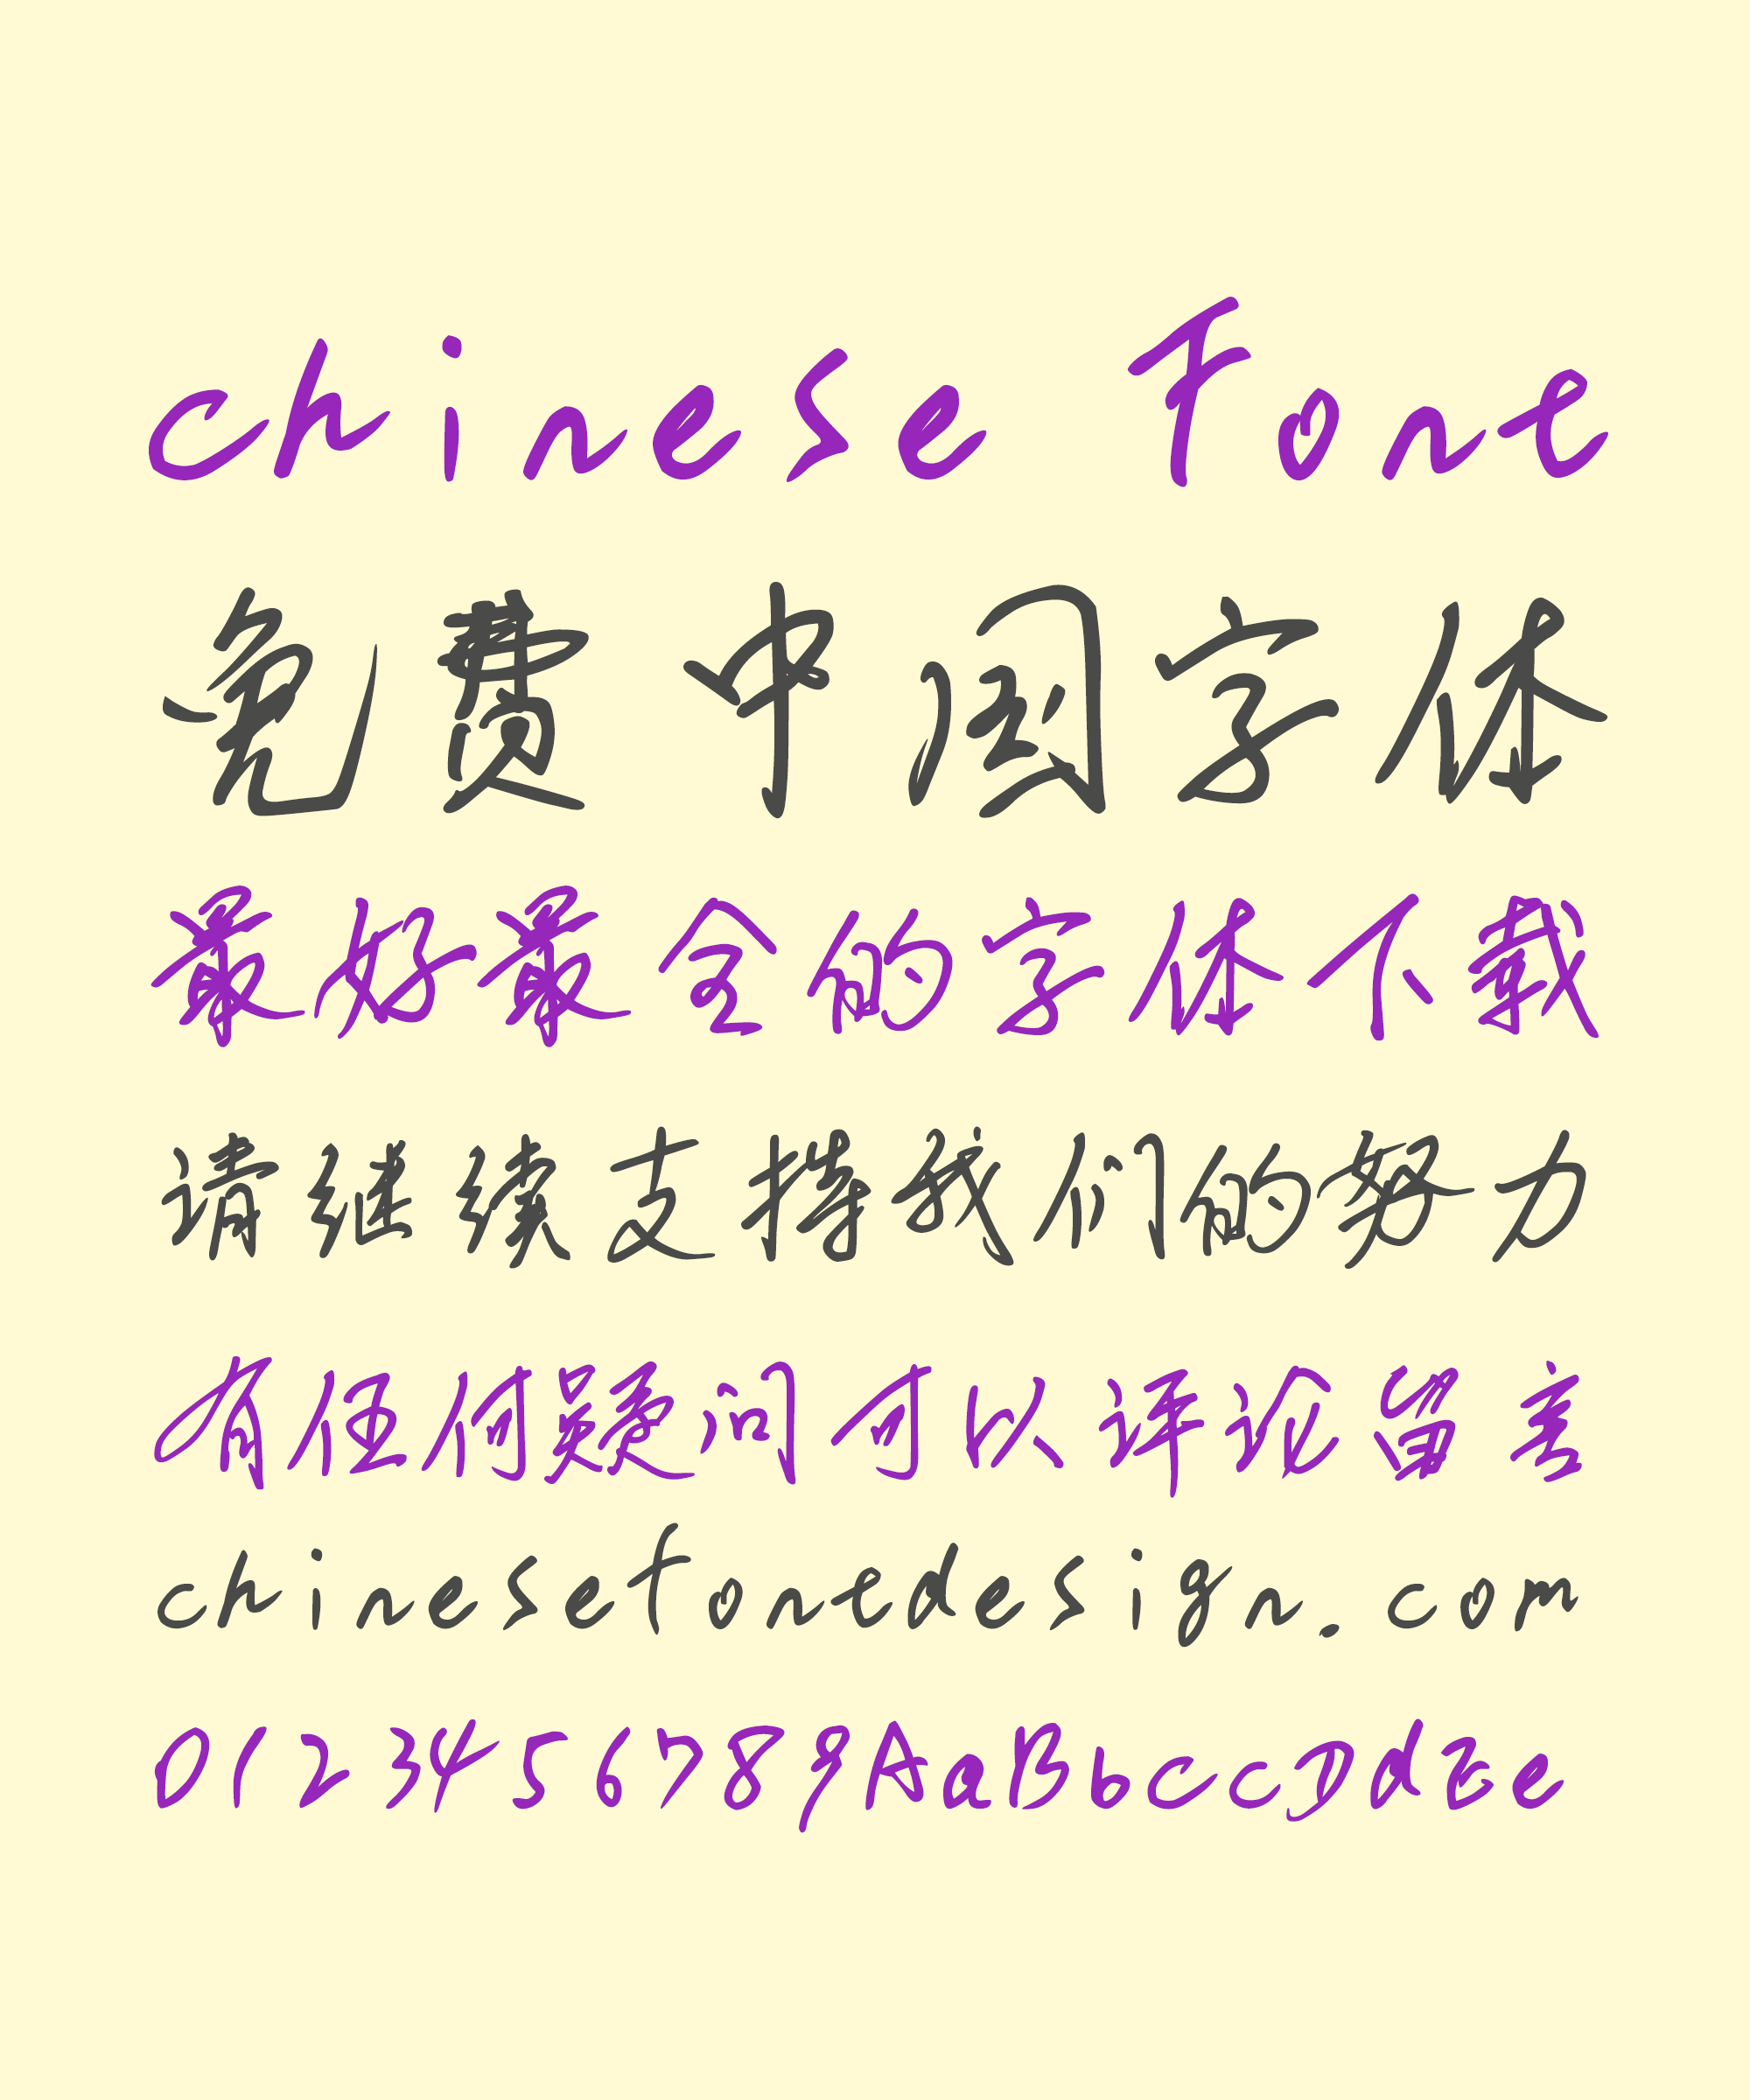 Guofu Li (liguofu) Handwriting Chinese Font -liguofu